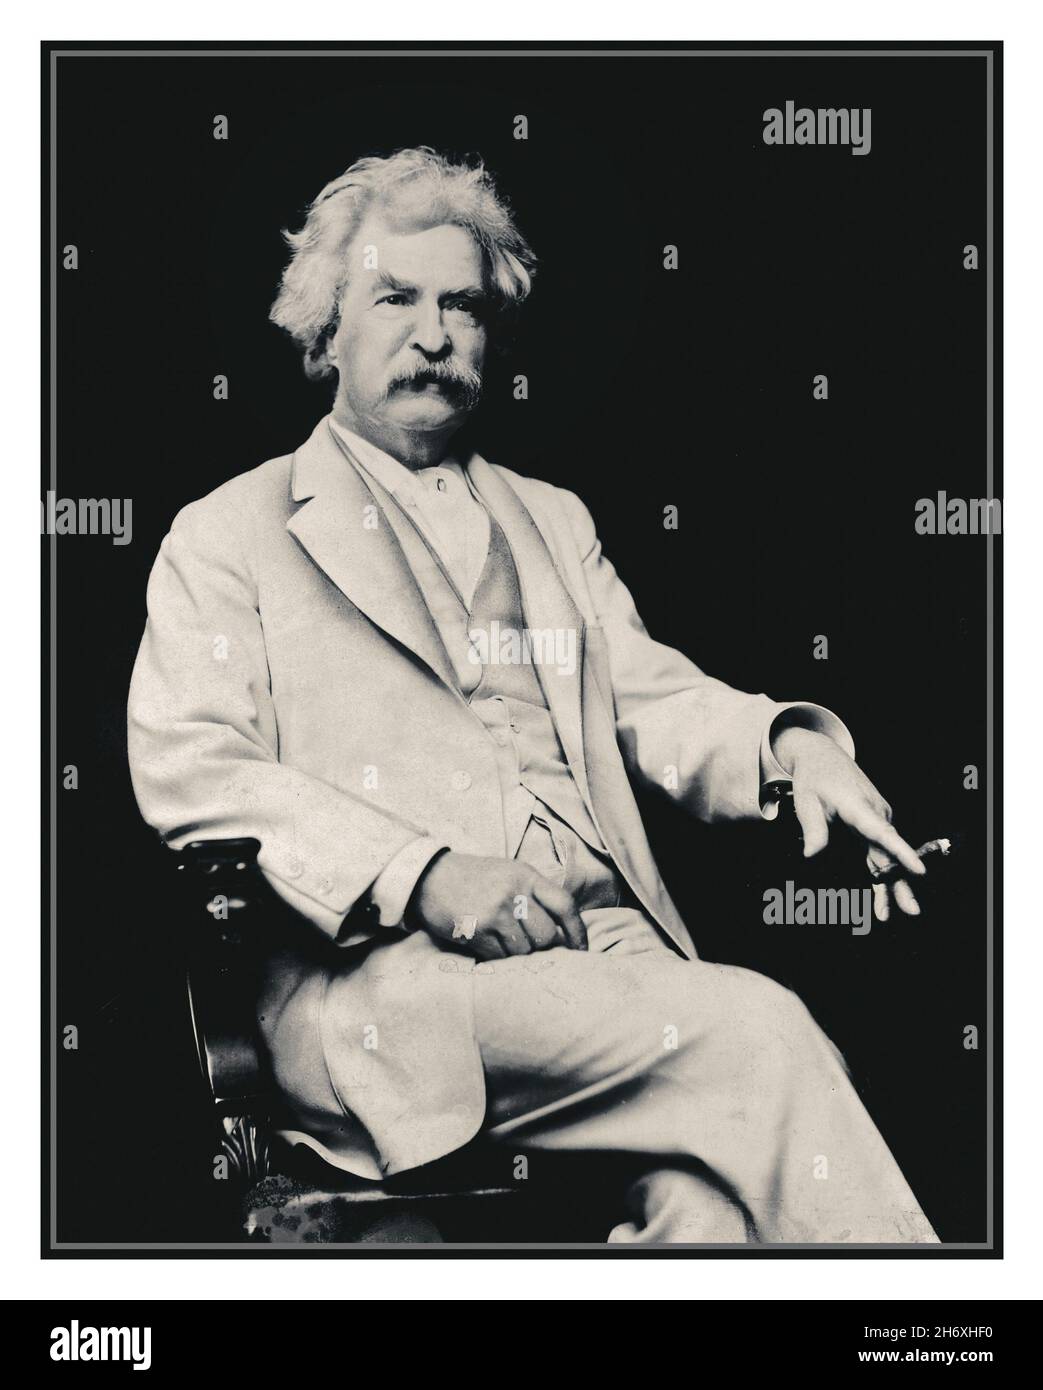 MARK TWAIN Vintage 1900s Portrait d'archive de Mark Twain, portrait de trois quarts de longueur, assis, face légèrement à droite, avec cigare en main] Date de création/publication : c1907.1 imprimé d'archive photographique. Banque D'Images